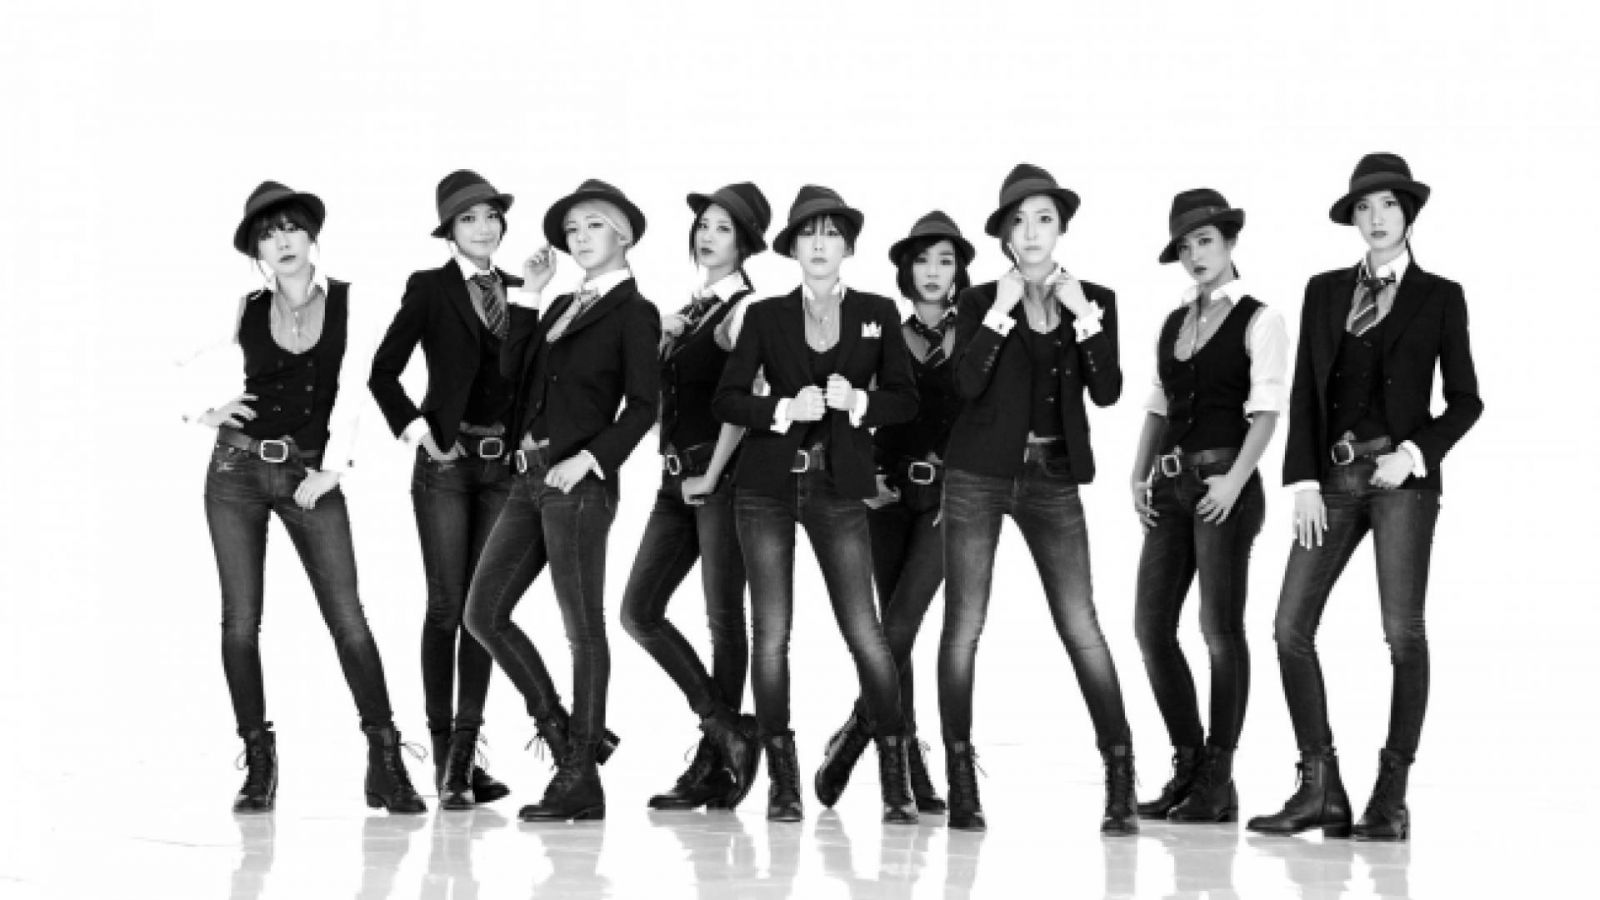 O comeback de sucesso do Girls' Generation © SM Entertainment, Girls' Generation